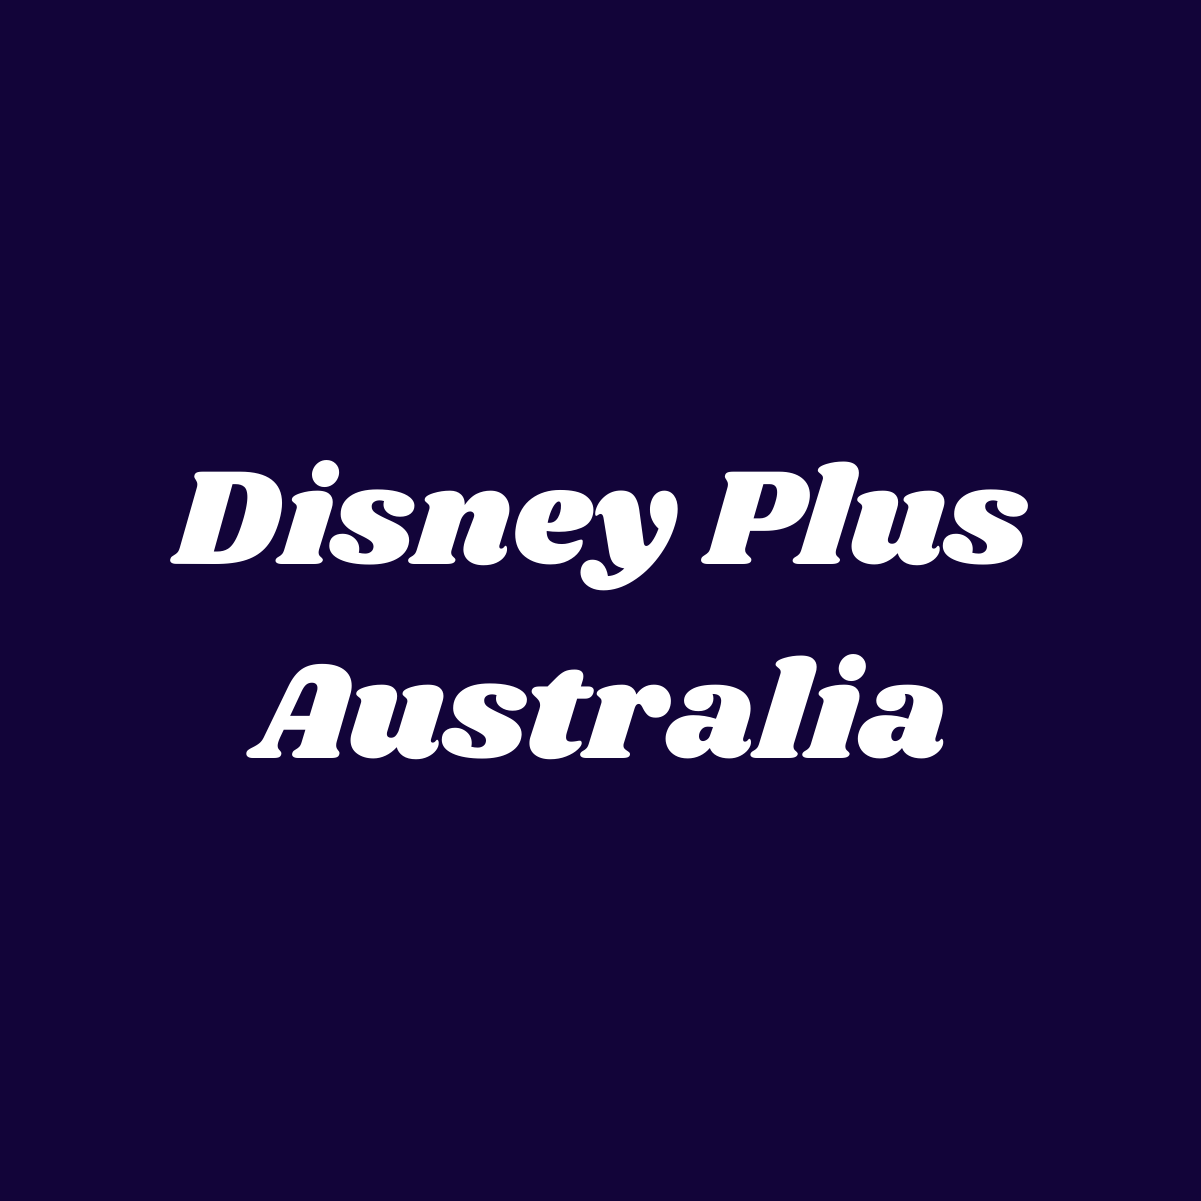 Disney Plus Australia – Salient Features and Disadvantages